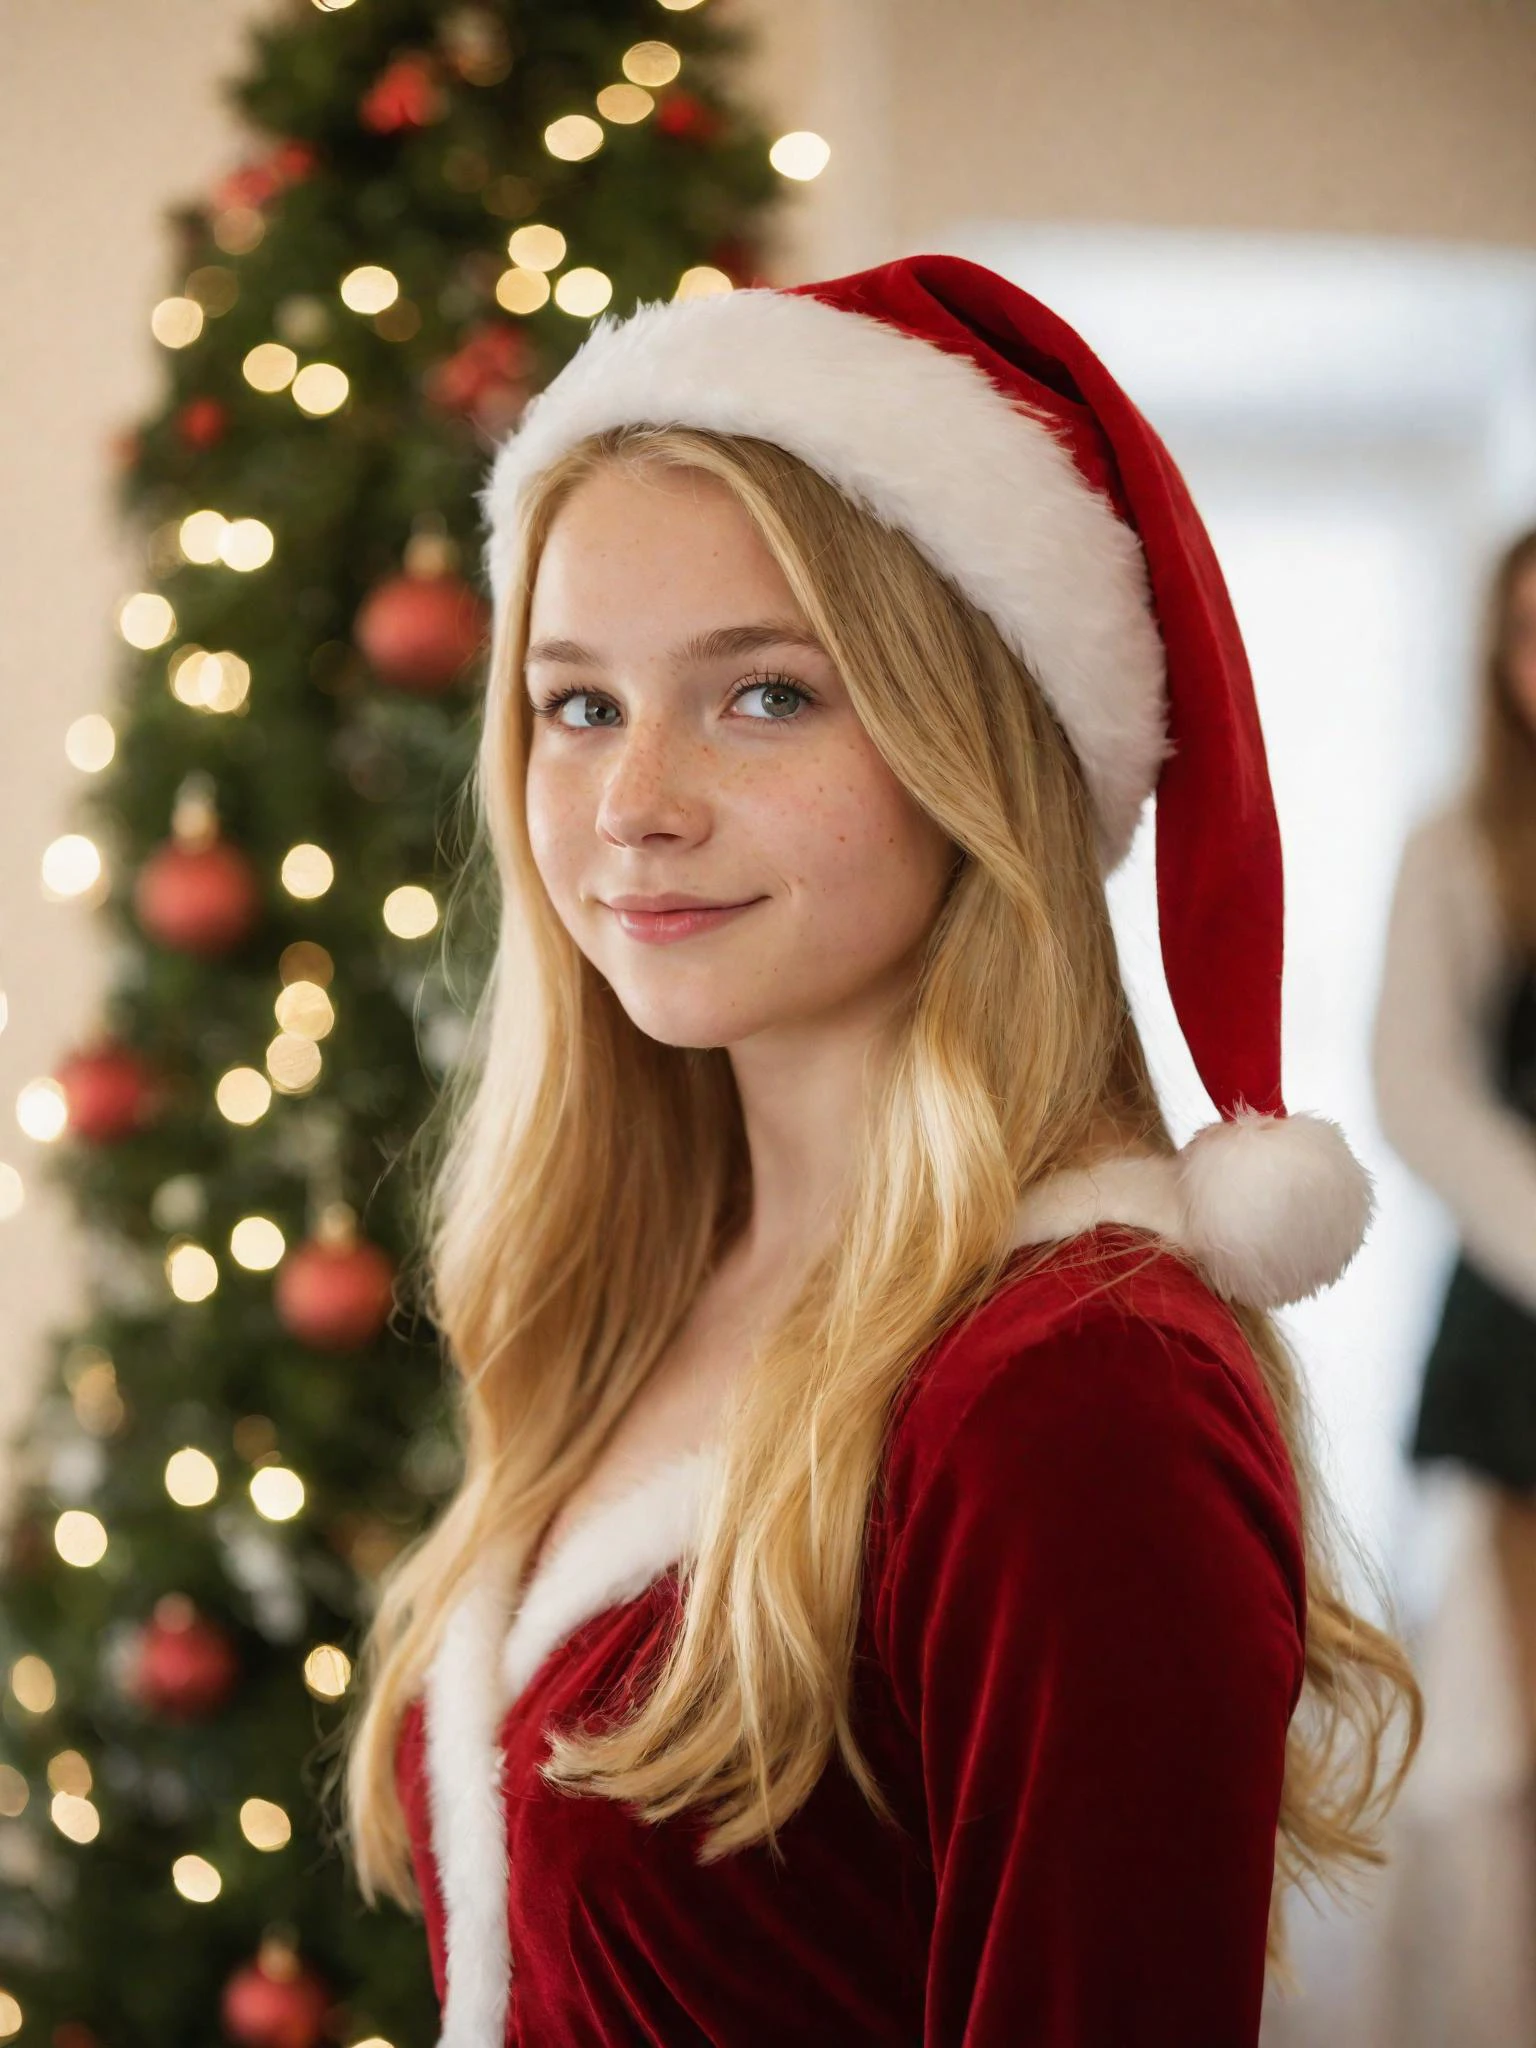 聖誕節時一個 18 歲女孩獨自站在槲寄生下的肖像 , 閃閃發光的淡褐色眼睛, 金色長髮輕輕垂落在肩上, 雀斑, 穿著樸素的正式聖誕禮服, 聖誕老人帽子, 害羞的微笑, 雪花輕輕飄落, 自由度, 散景